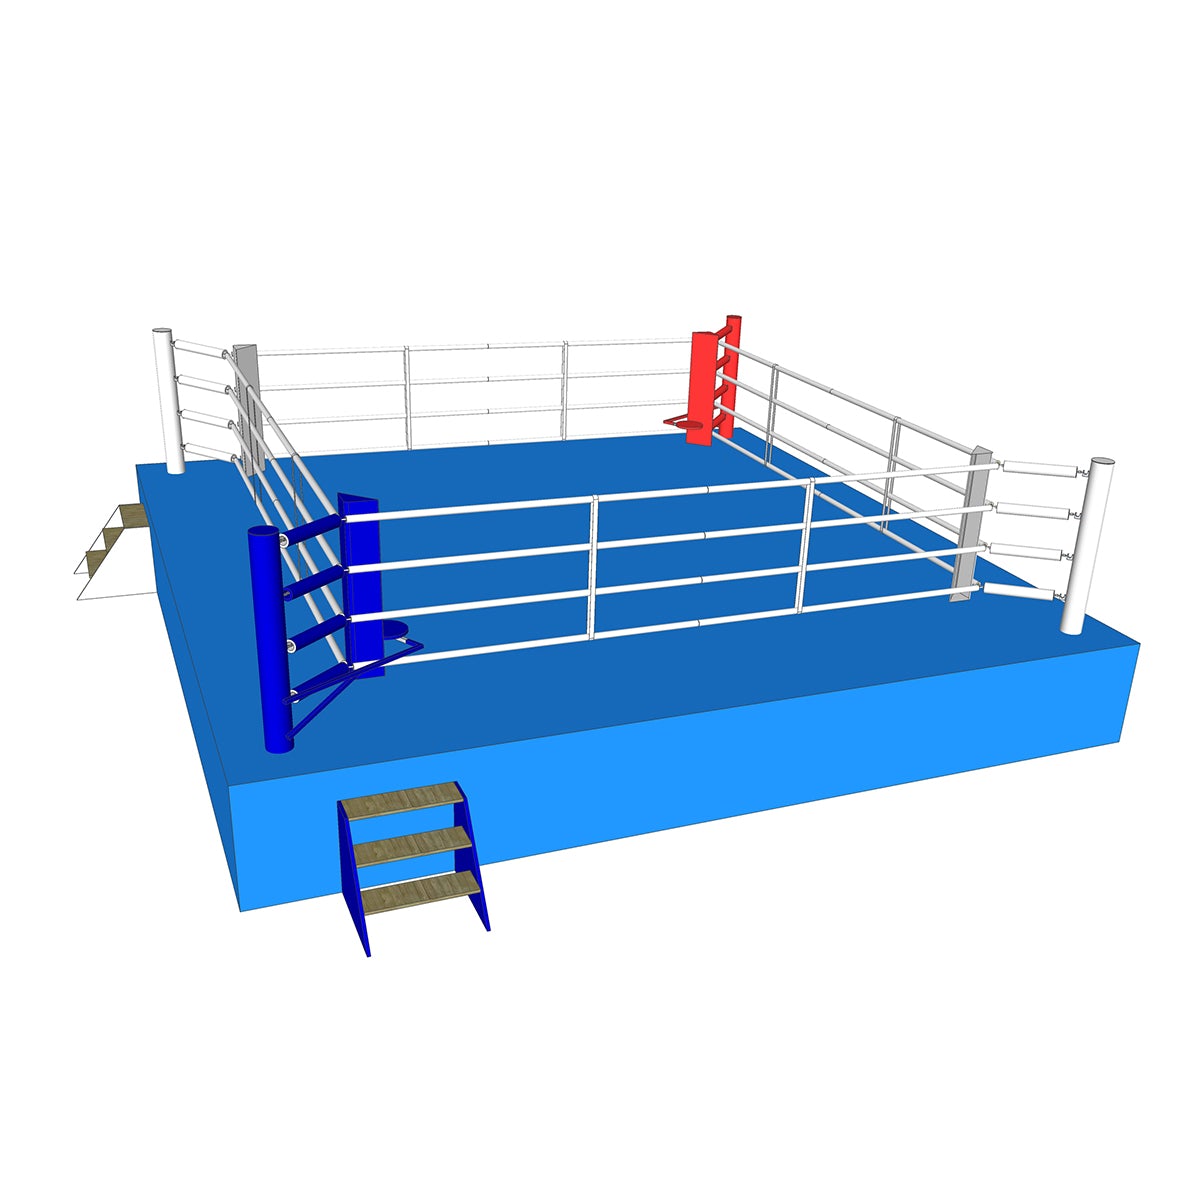 Ring de boxe 7,8 x 7,8 m selon les règles AIBA, BRCP75-4